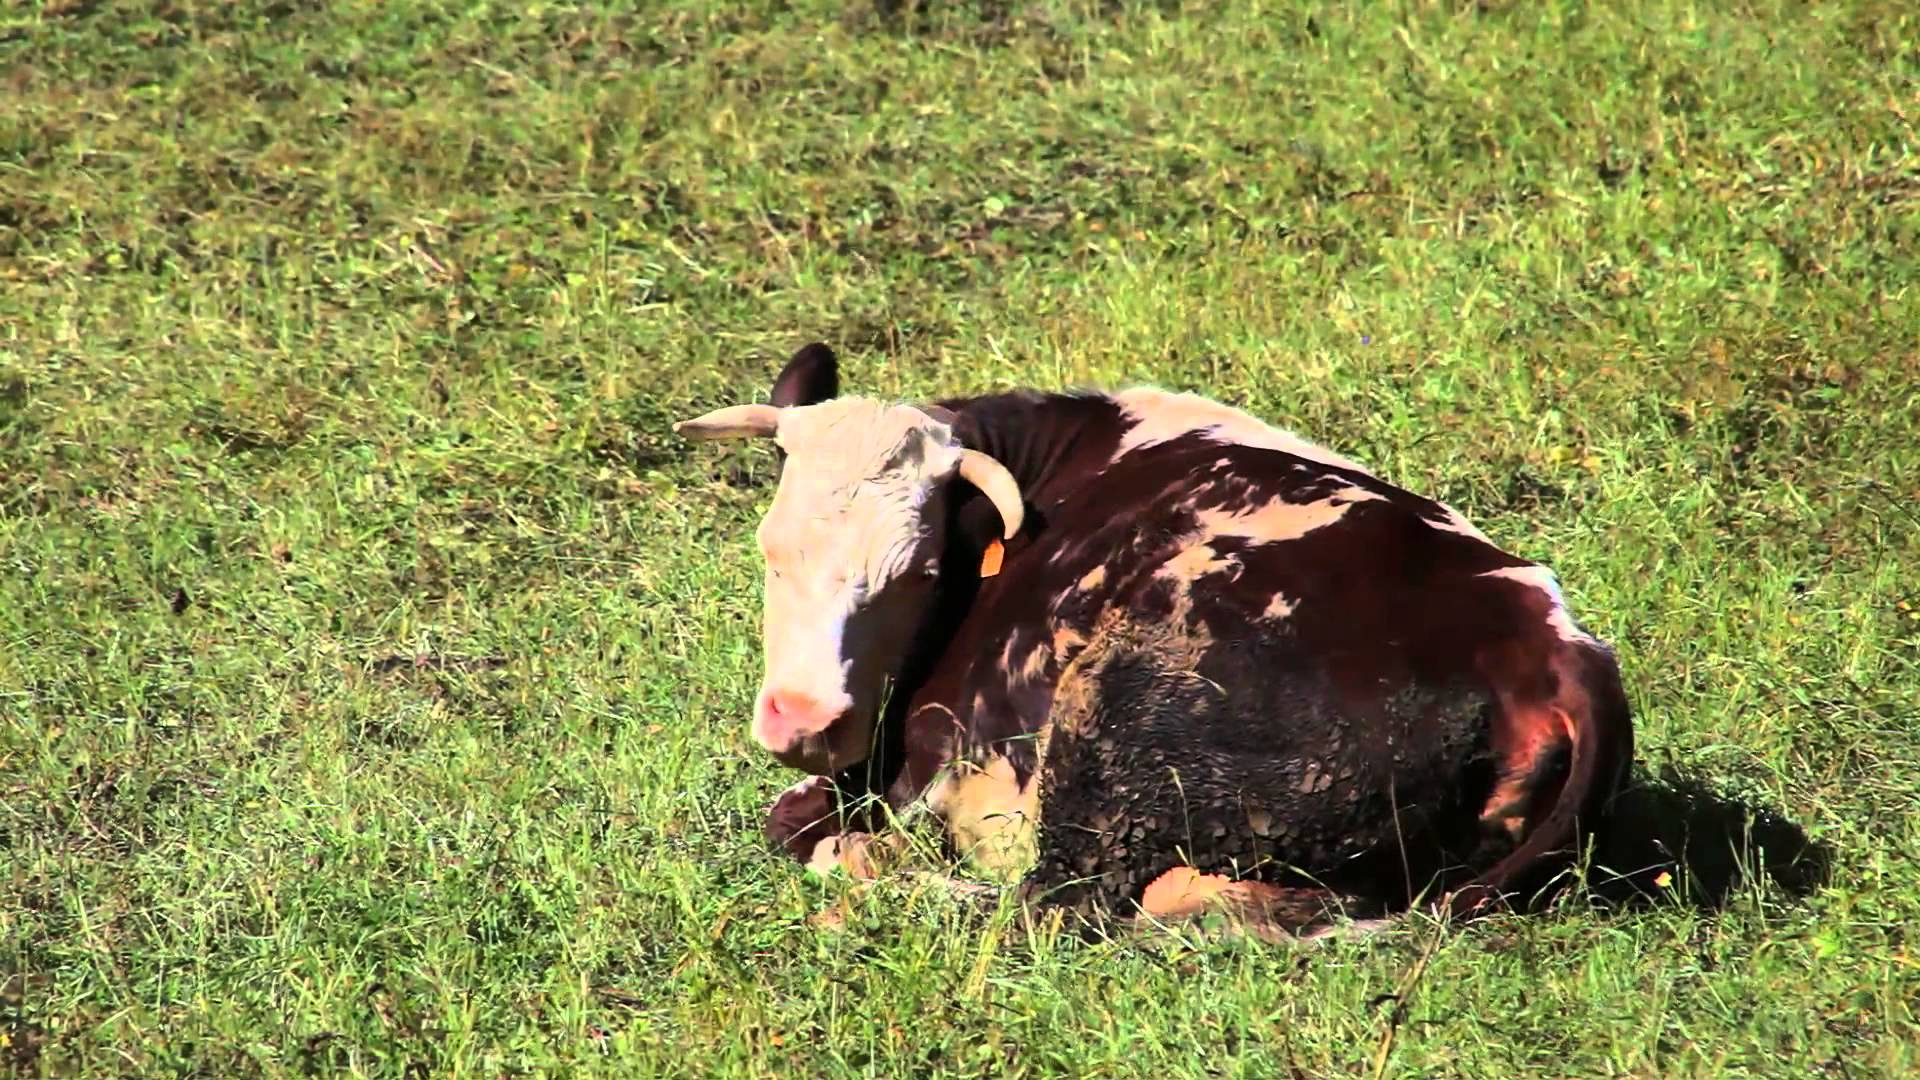 Pillole di natura: le mucche tutelano il paesaggio